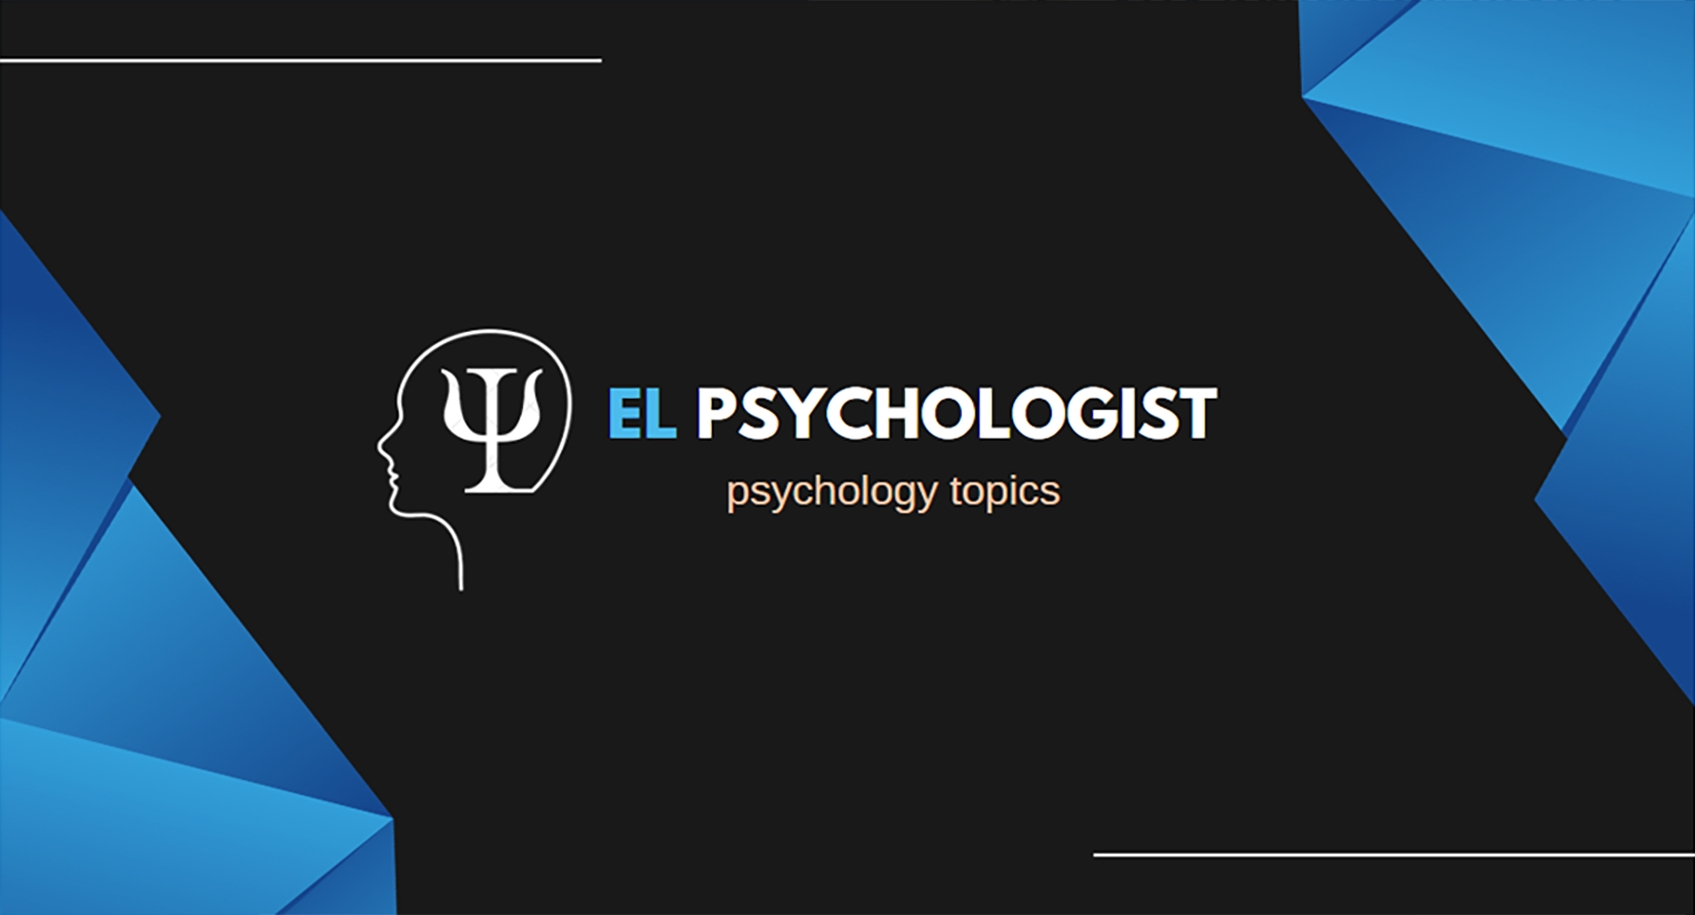 El Psychologist